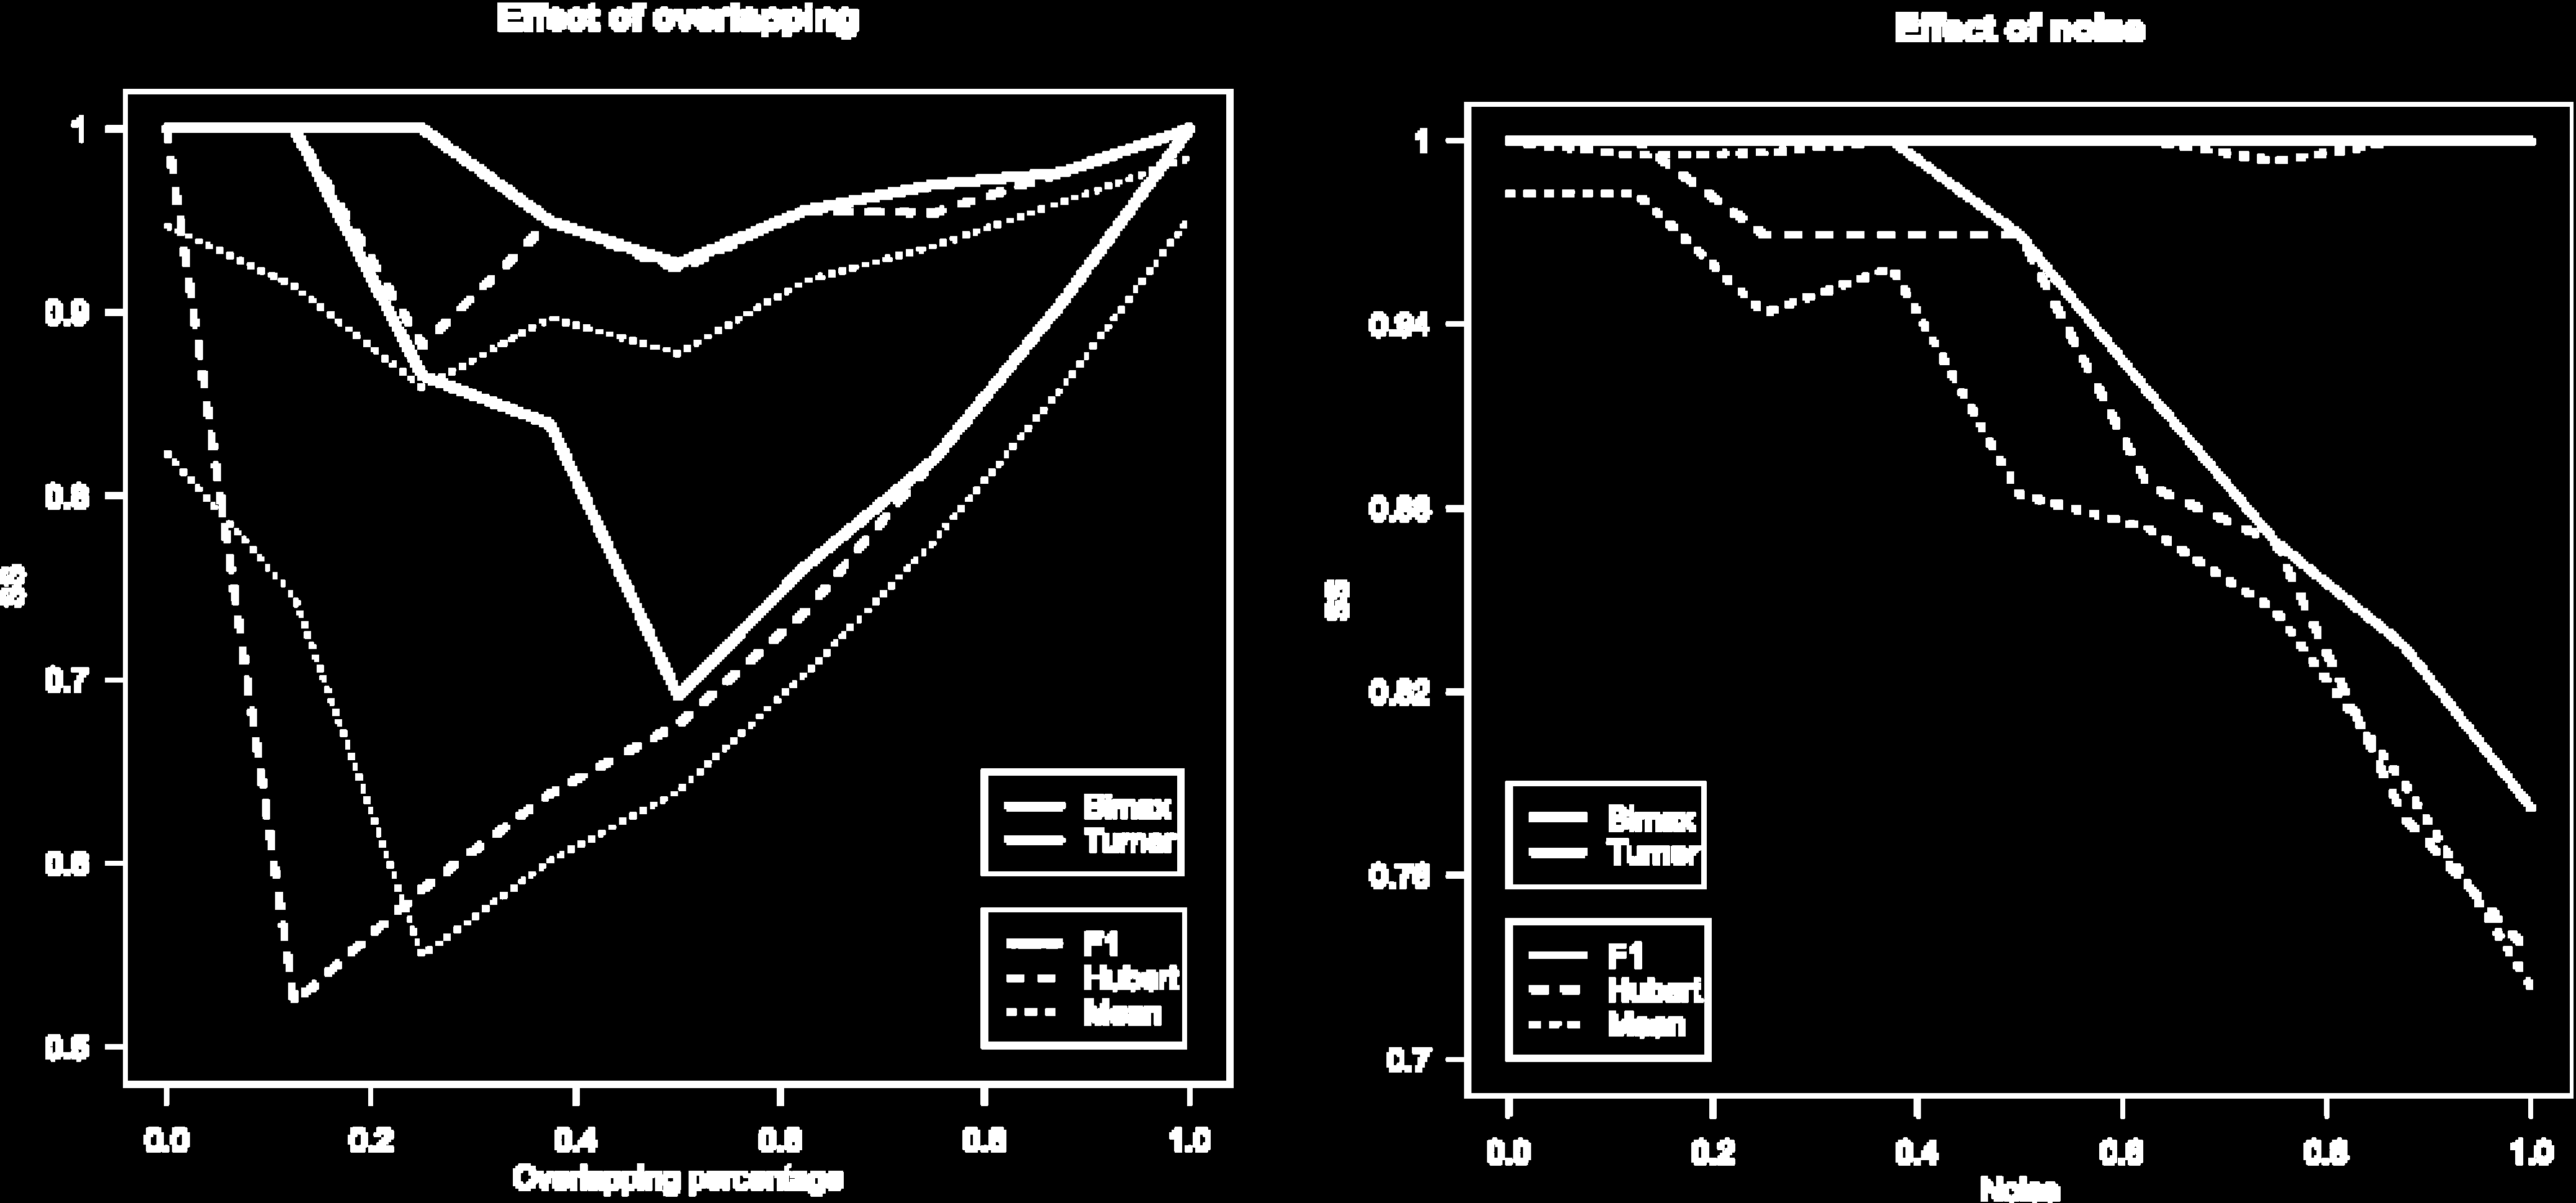 1.7 parametrización de algoritmos de biclustering Vamos a utilizar este procedimiento de parametrización con dos algoritmos de biclustering: Bimax [37] y el modelo de tartán de Turner [54, 55].